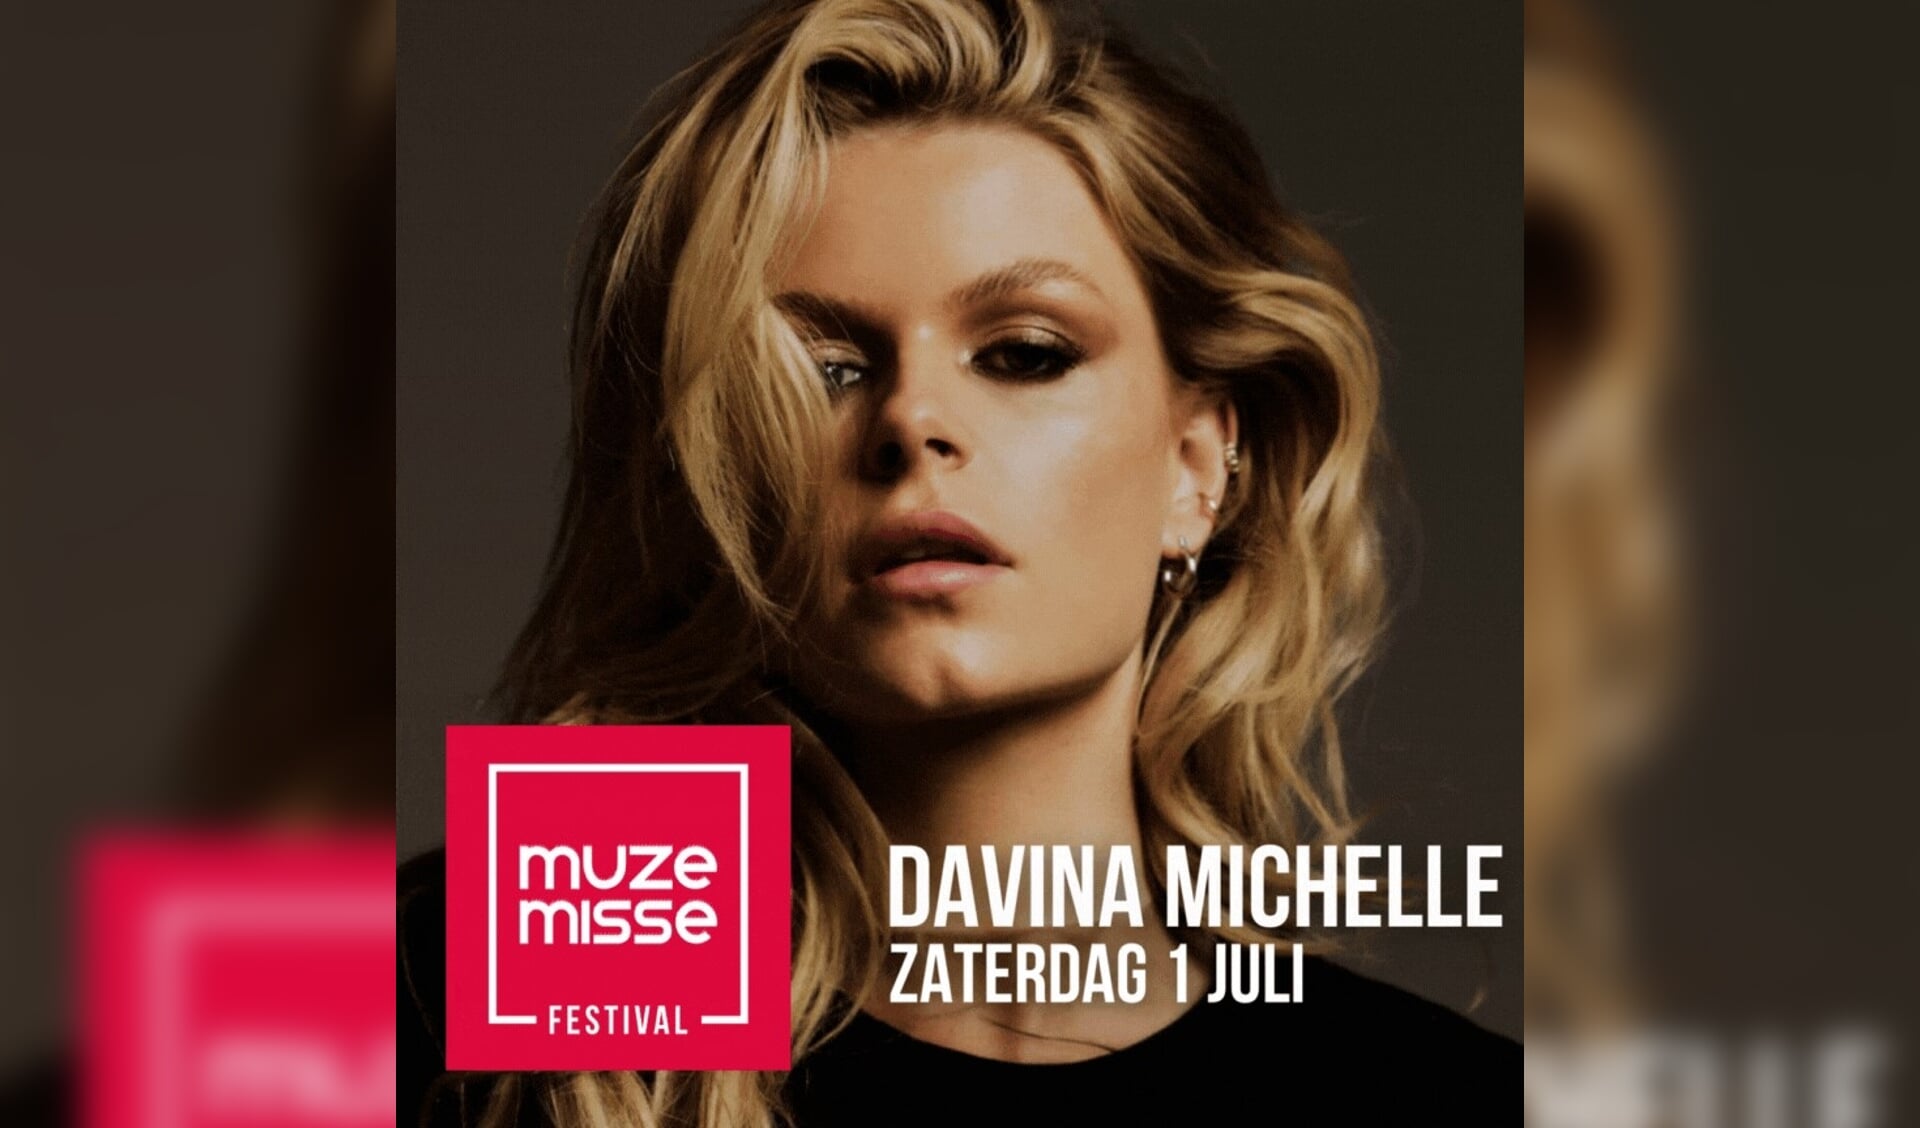 Davina Michelle is de headliner op 1 juli tijdens Muze Misse.